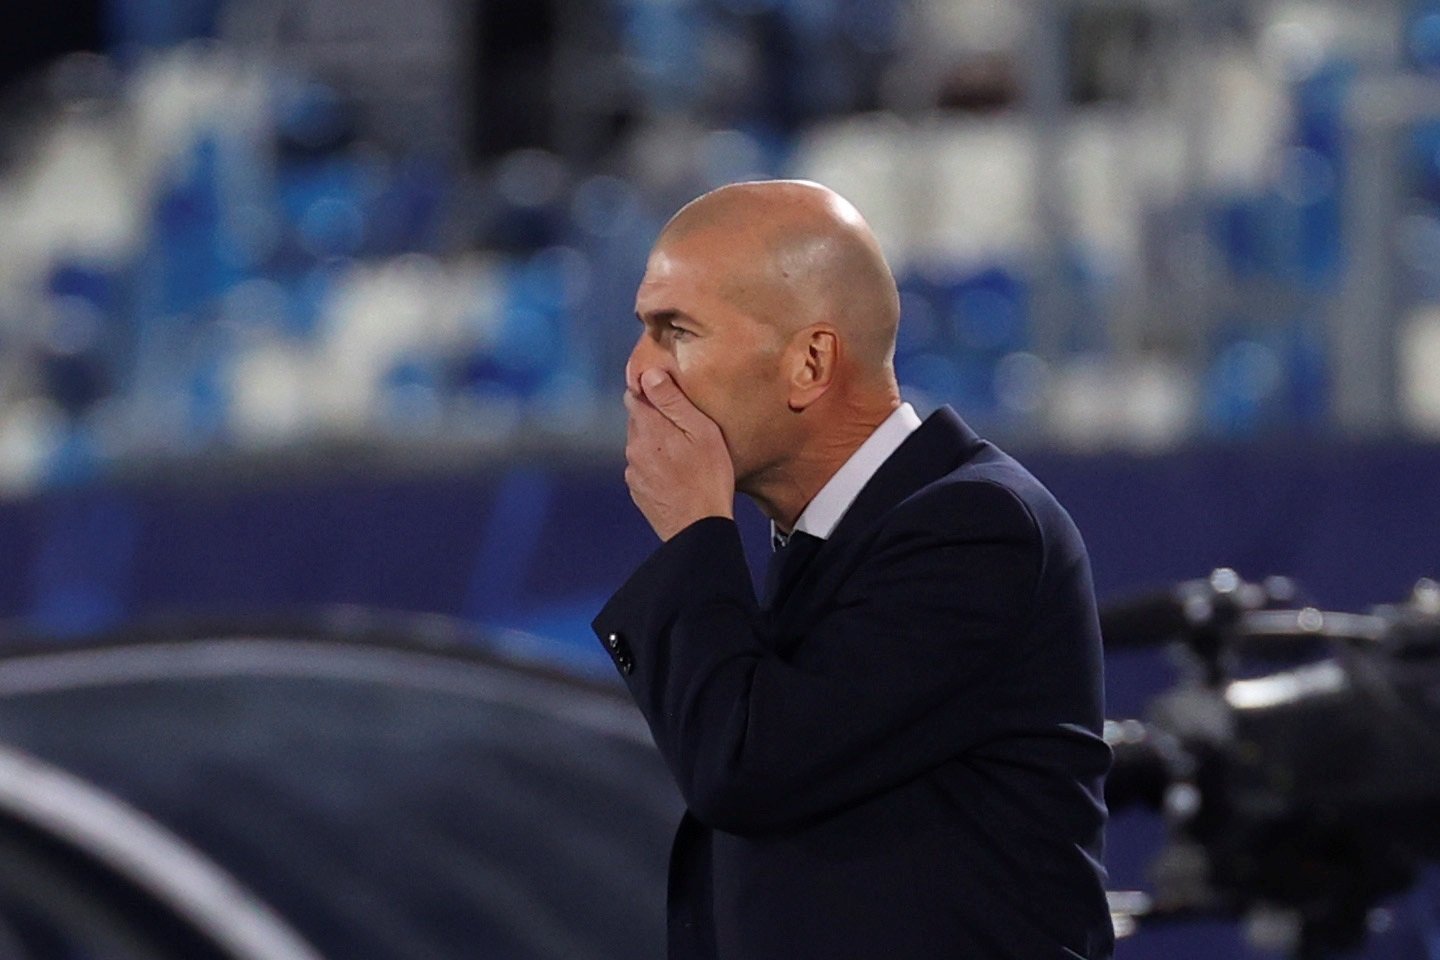 El PSG ja treballa per a Zidane: el fitxatge que Florentino Pérez no va voler al Real Madrid entra en joc